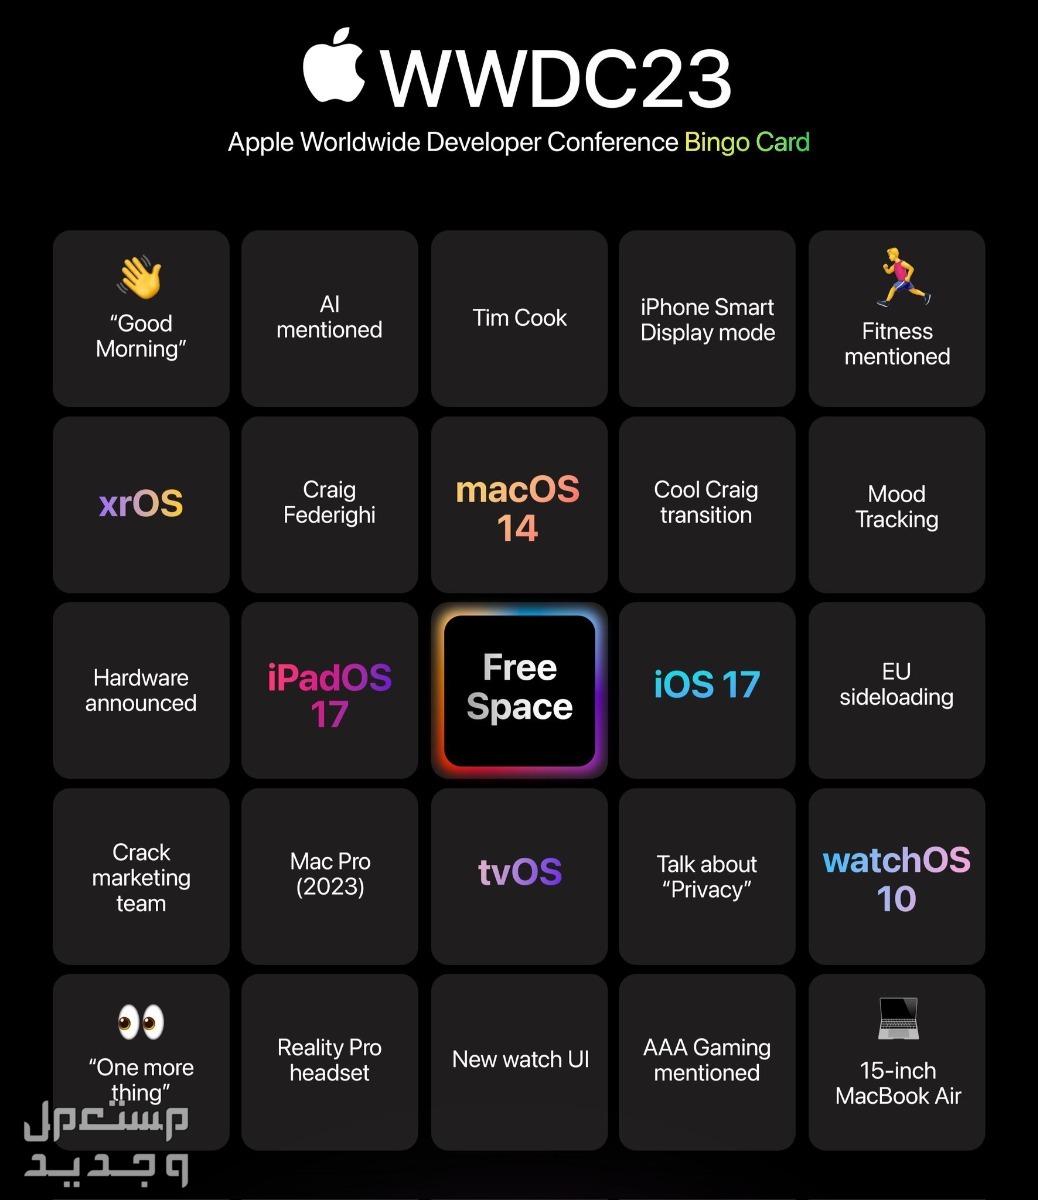 ما الجديد الذي يقدمه نظام ابل الجديد iOS 17 في المغرب